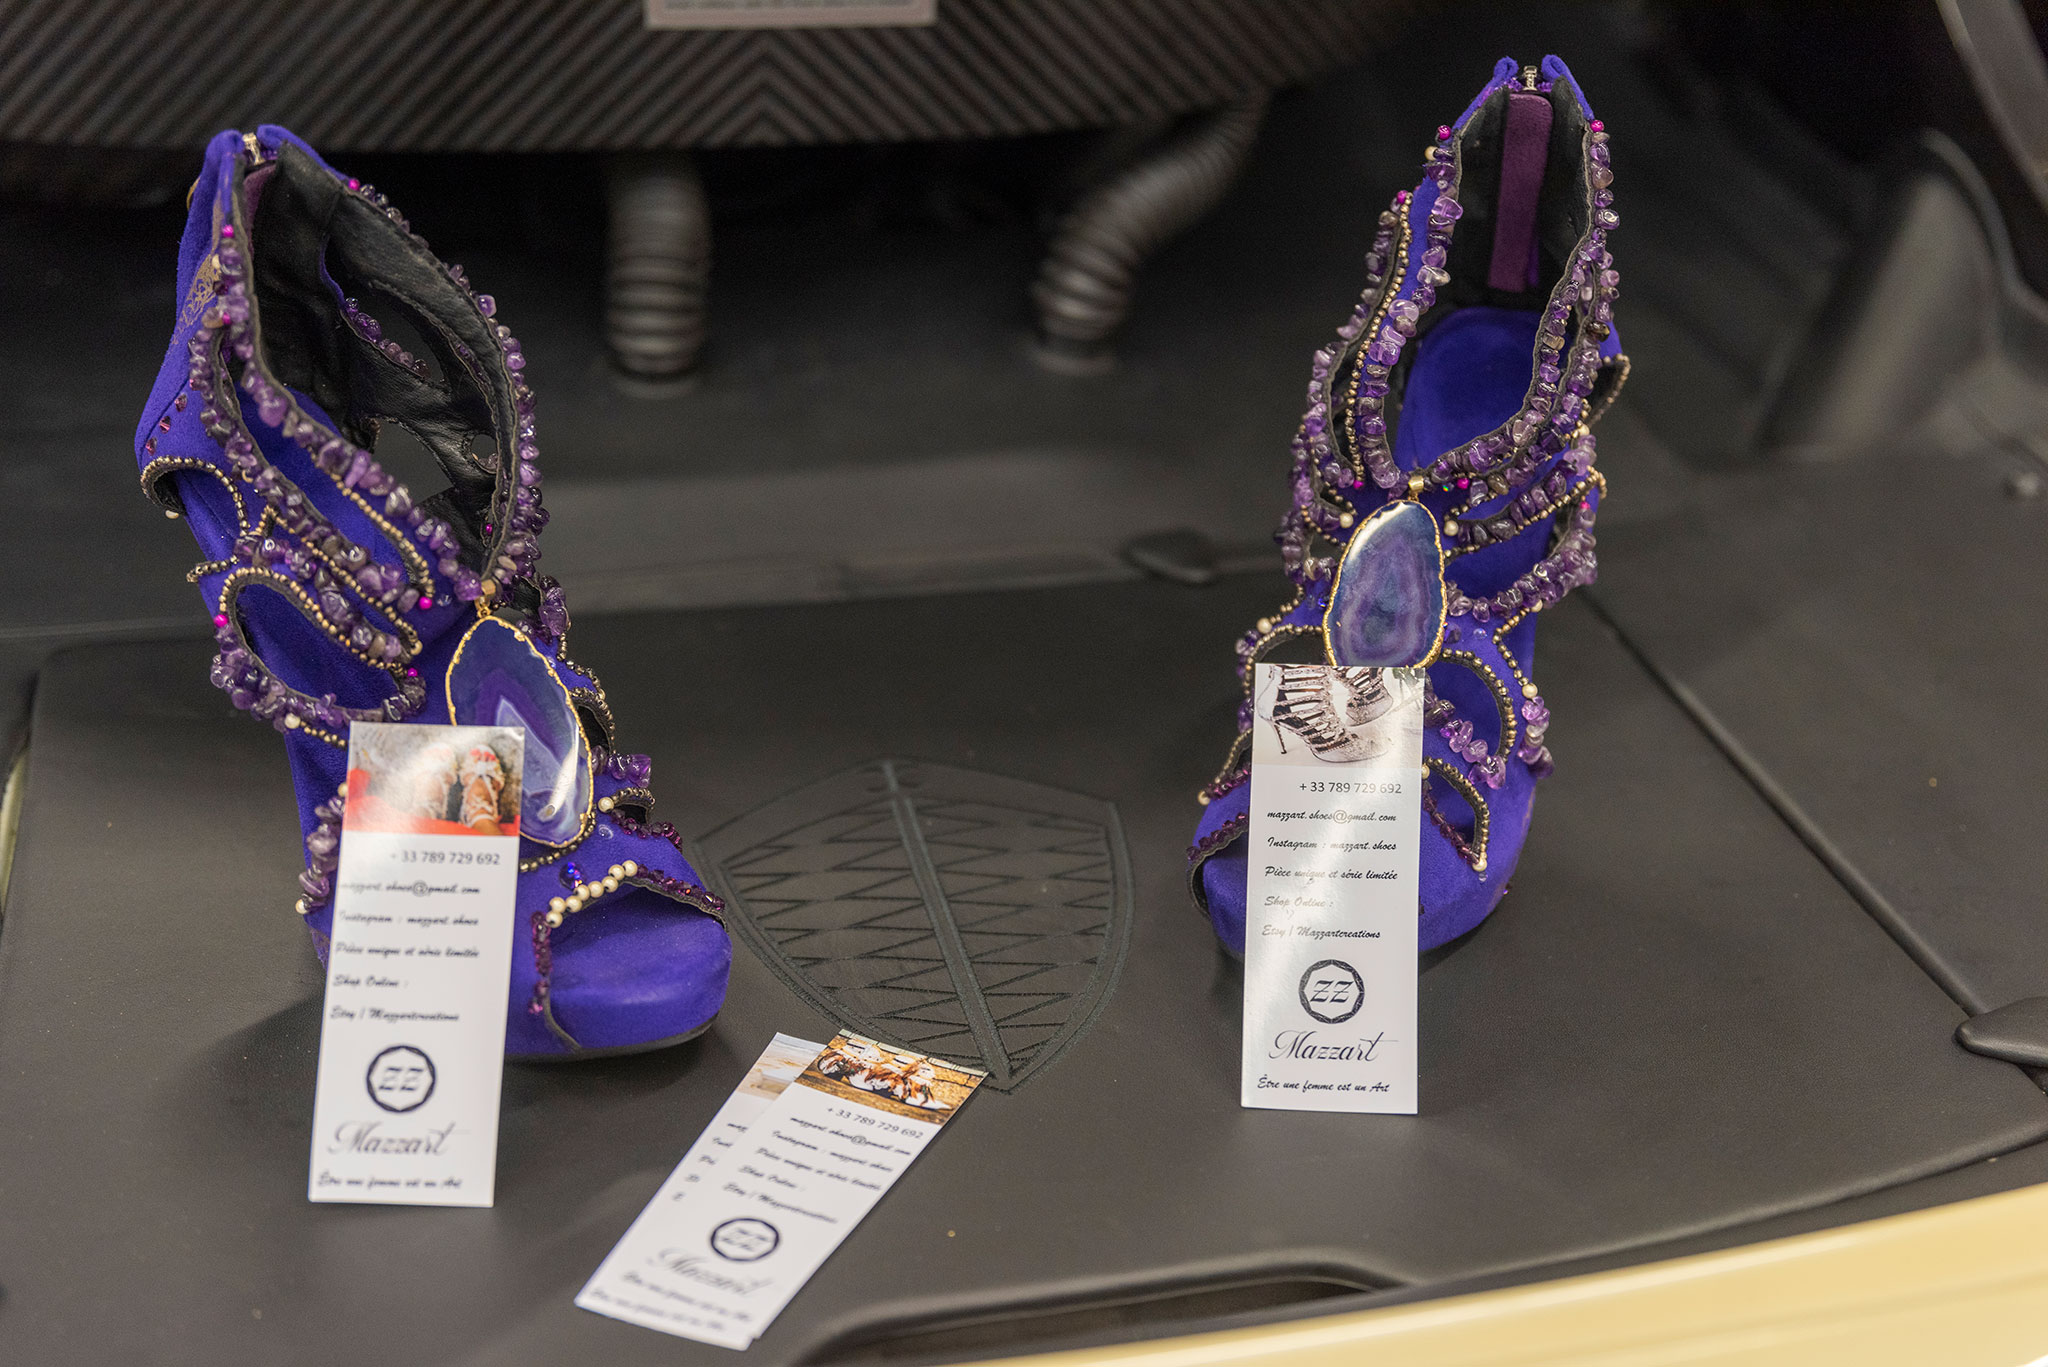 Des modèles uniques, voici ce que vous propose Mazzart Shoes basé à Annecy.